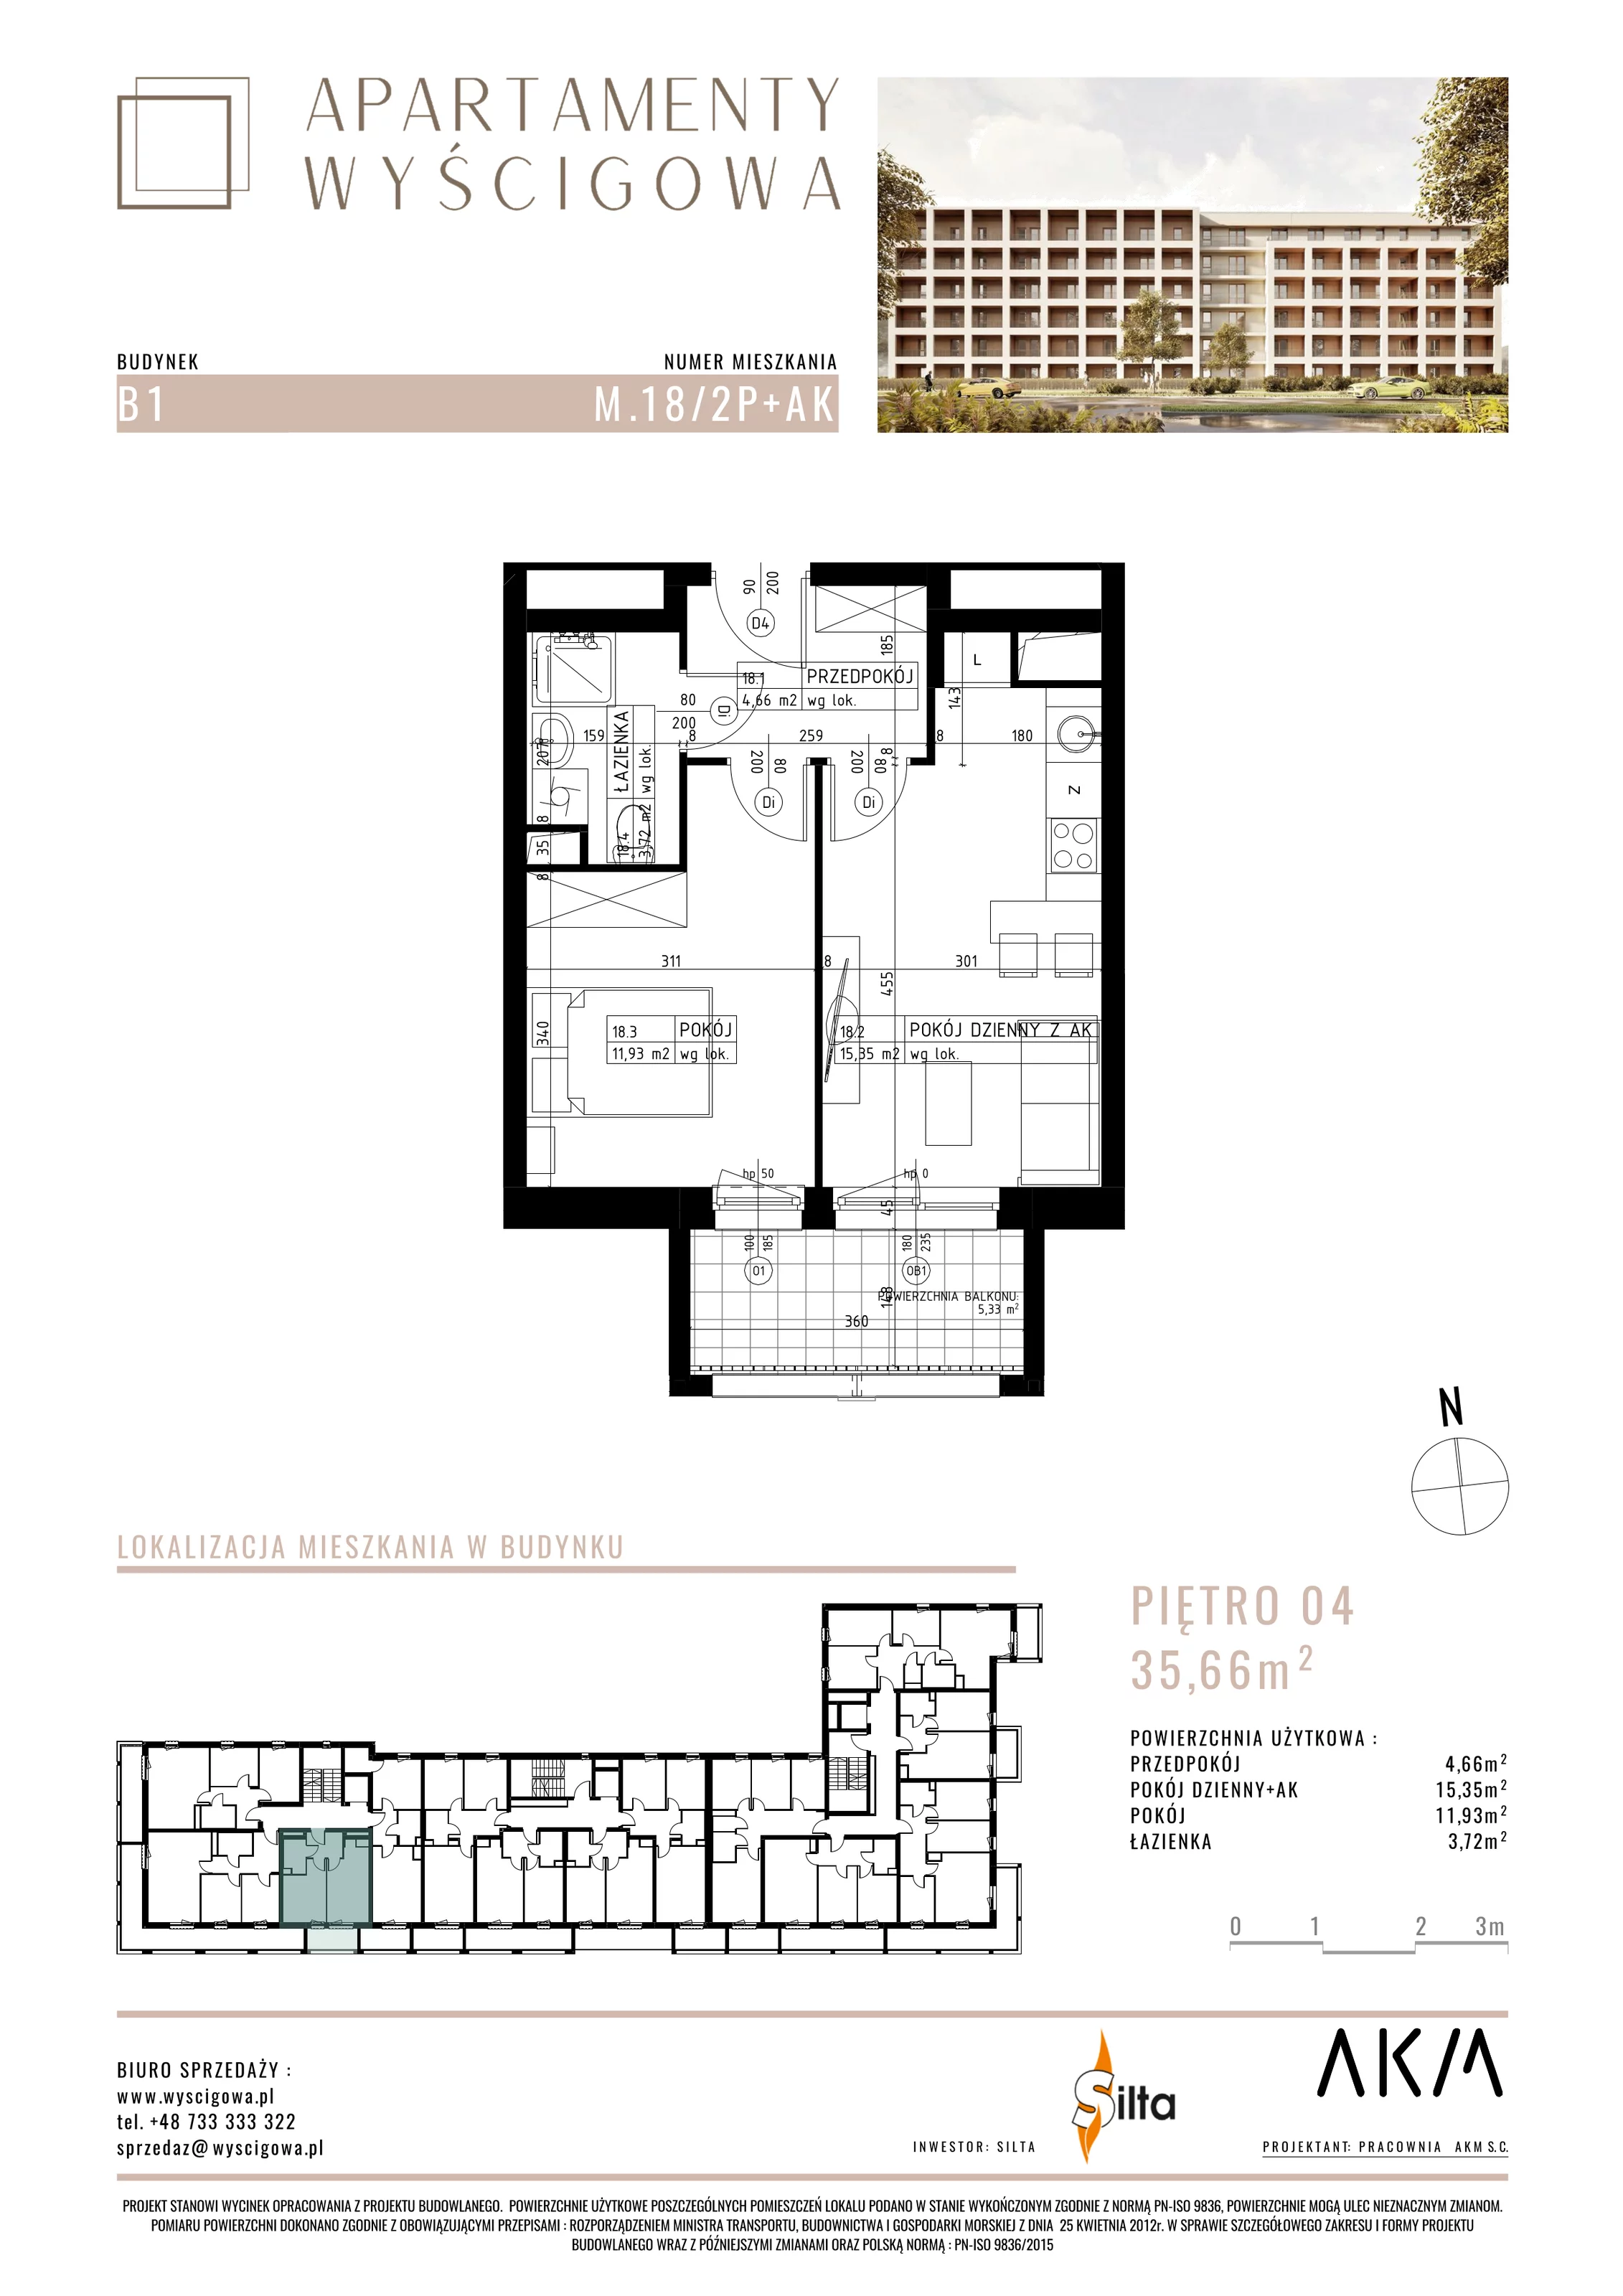 Mieszkanie 35,66 m², piętro 4, oferta nr B1.M18, Apartamenty Wyścigowa, Lublin, Dziesiąta, Dziesiąta, ul. Wyścigowa